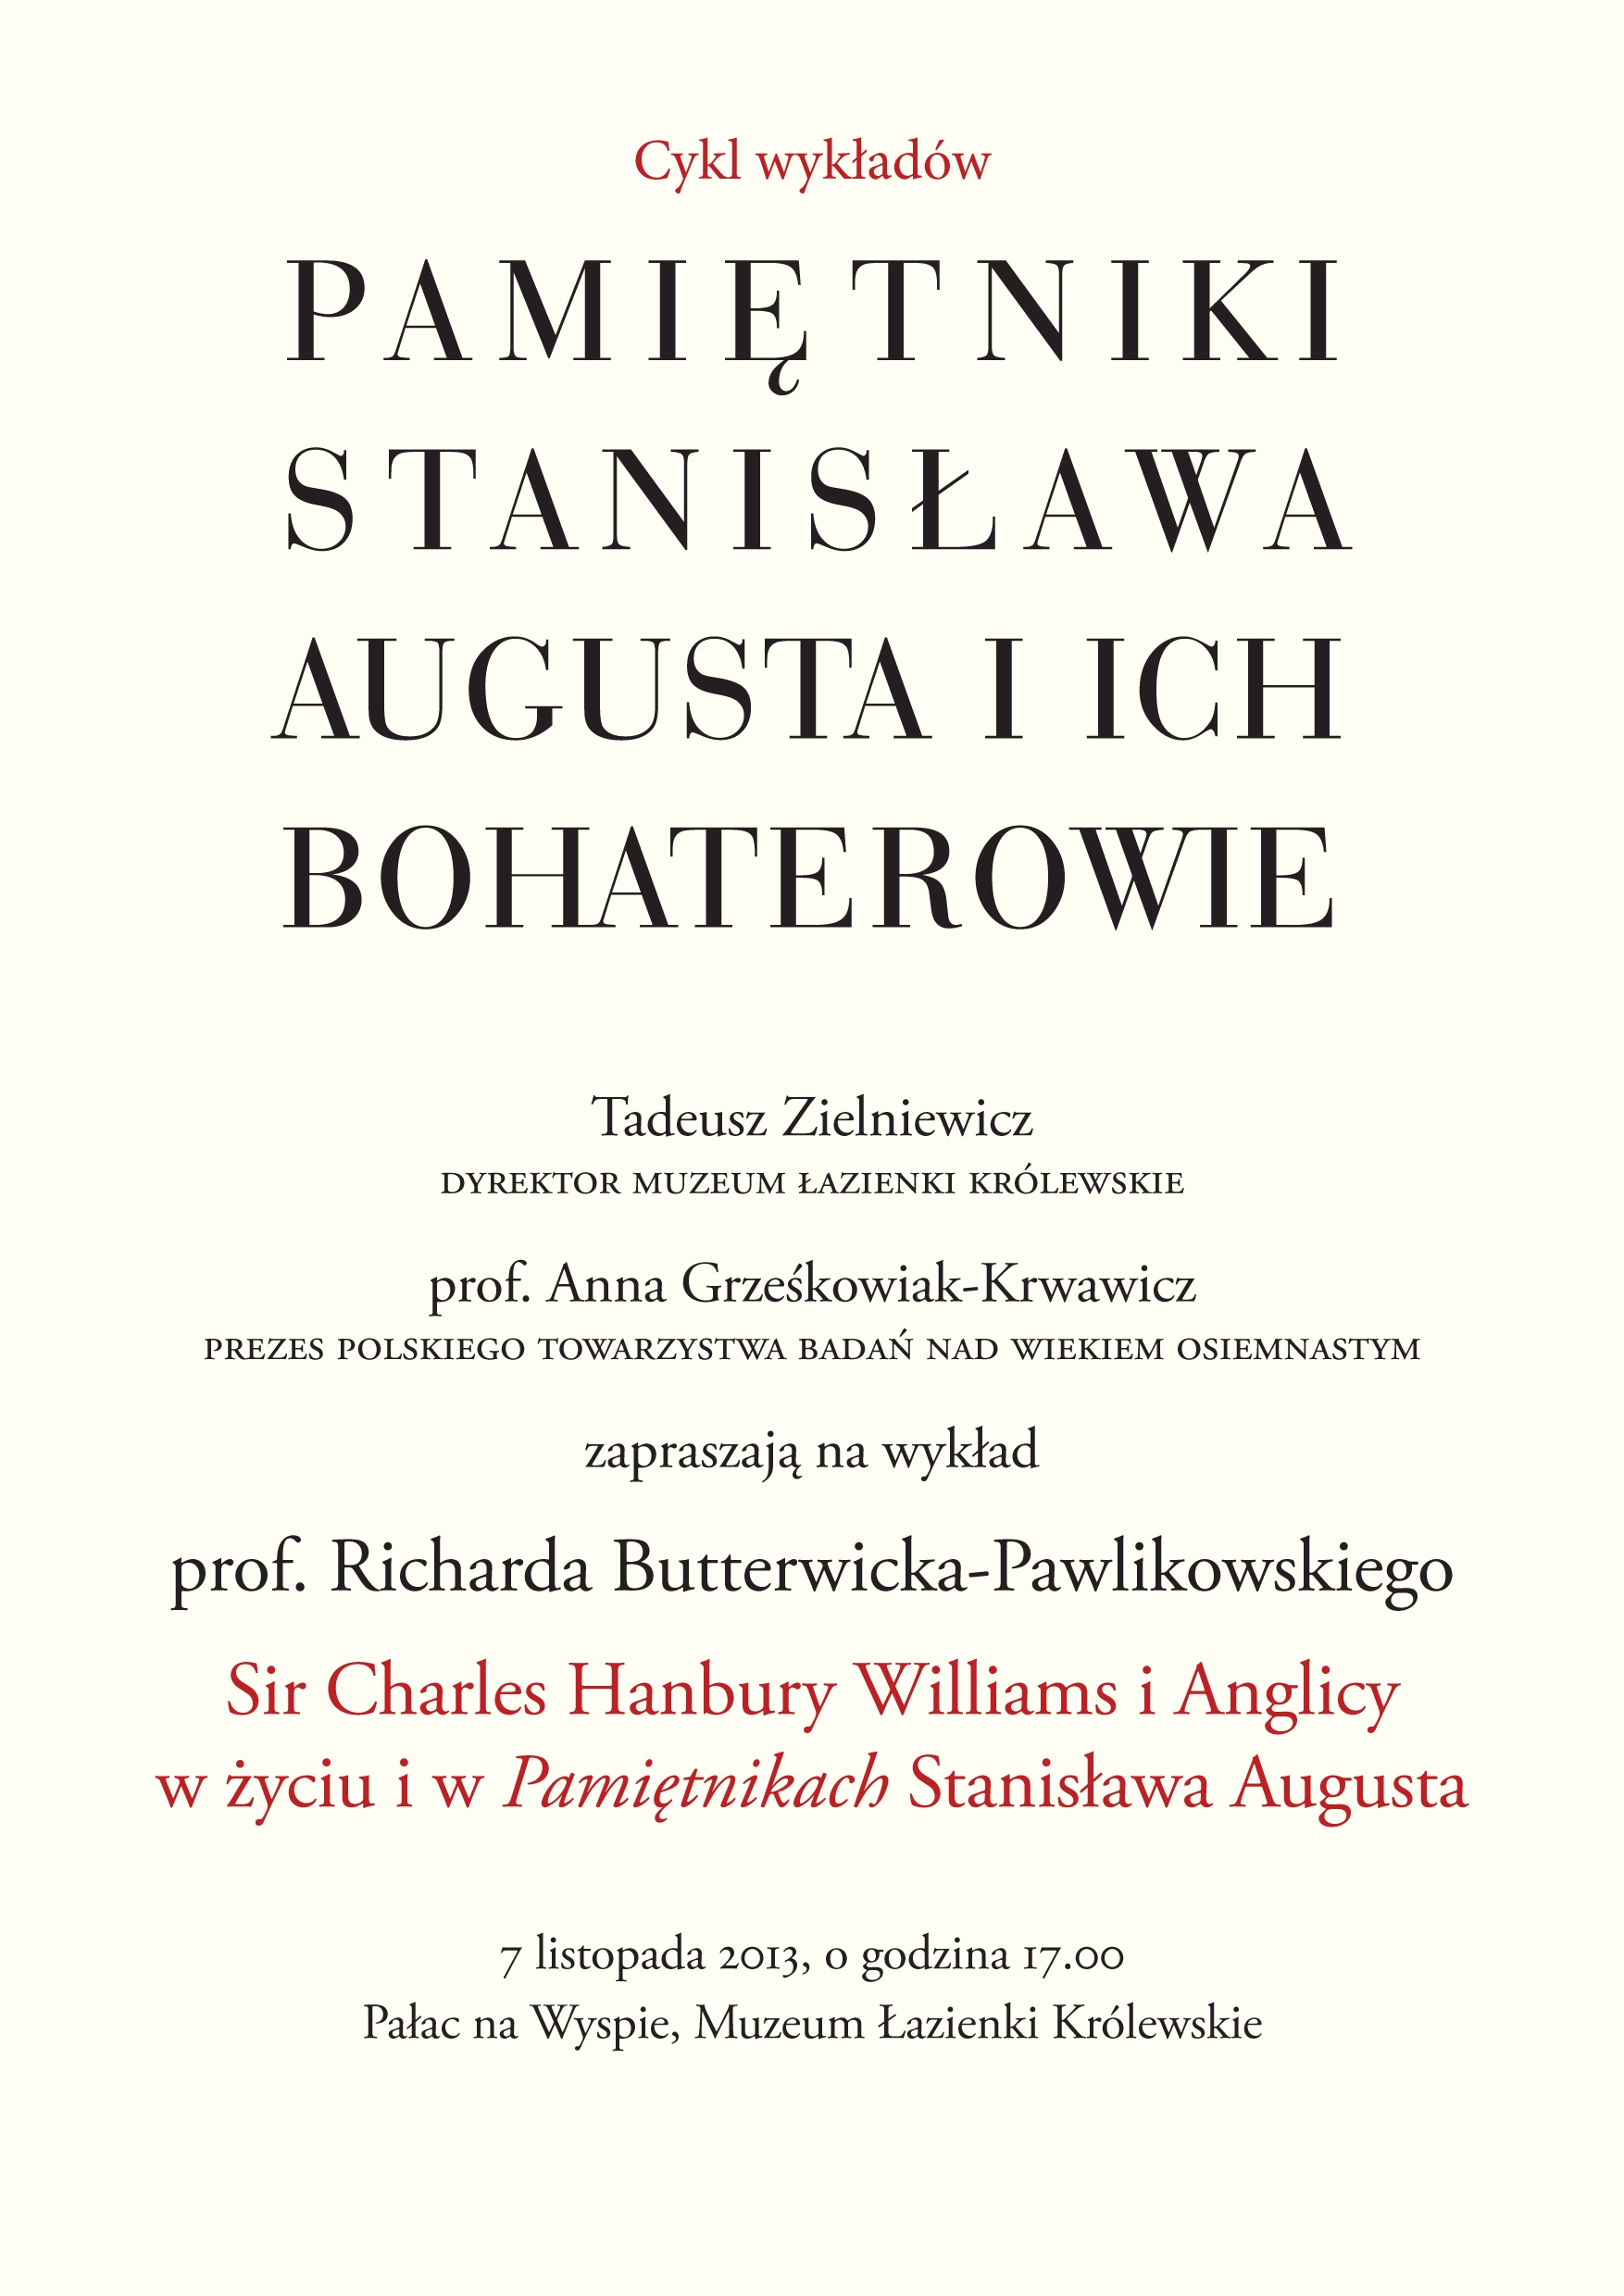 „Pamiętniki Stanisława Augusta i ich bohaterowie”, plakat (źródło: materiały prasowe)